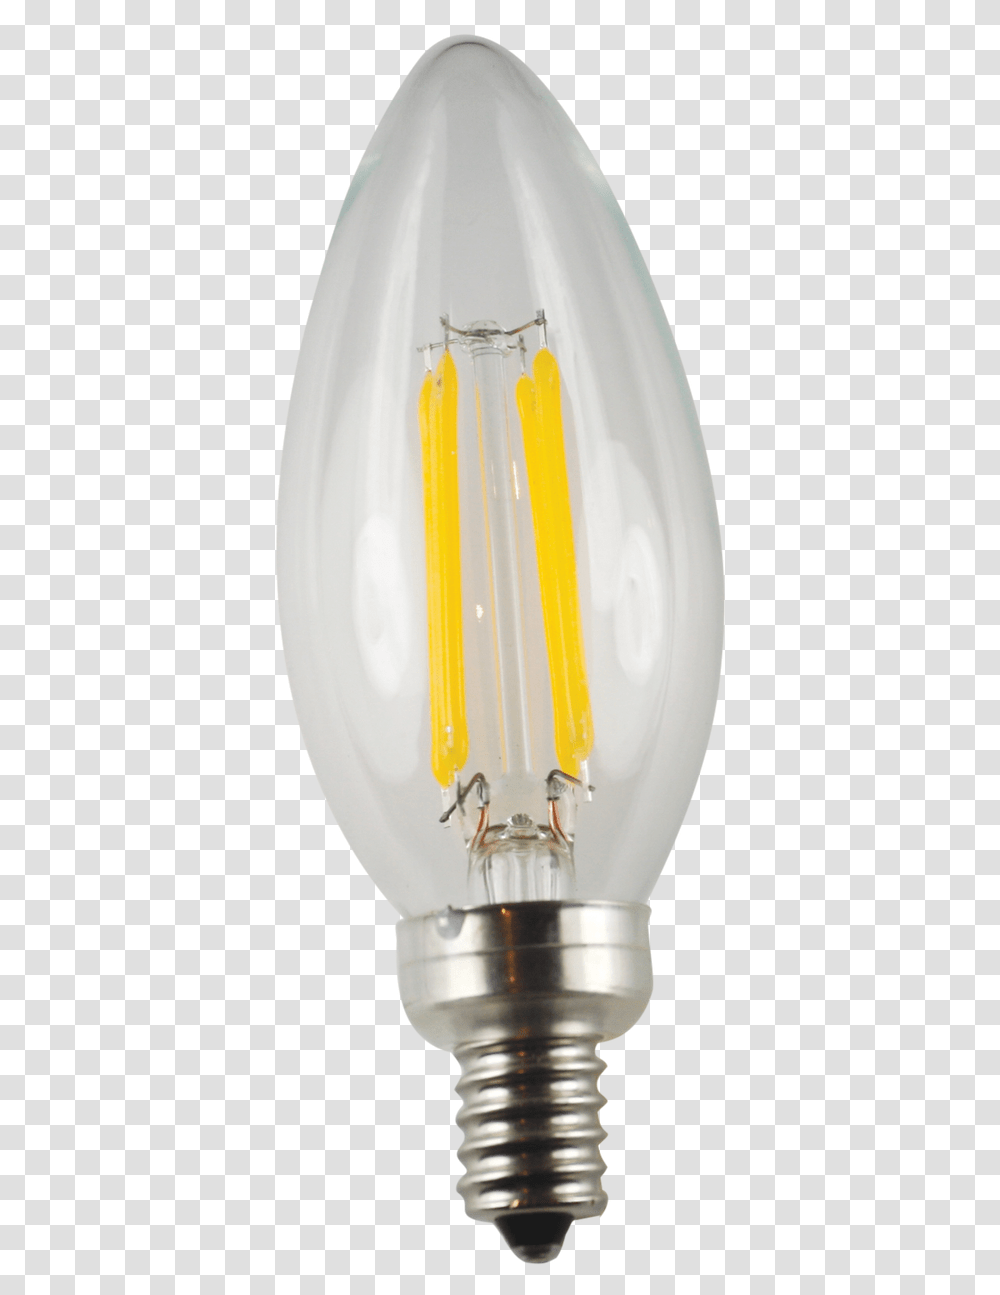 Security Lighting, Lamp, Lightbulb, Bowl, Porcelain Transparent Png